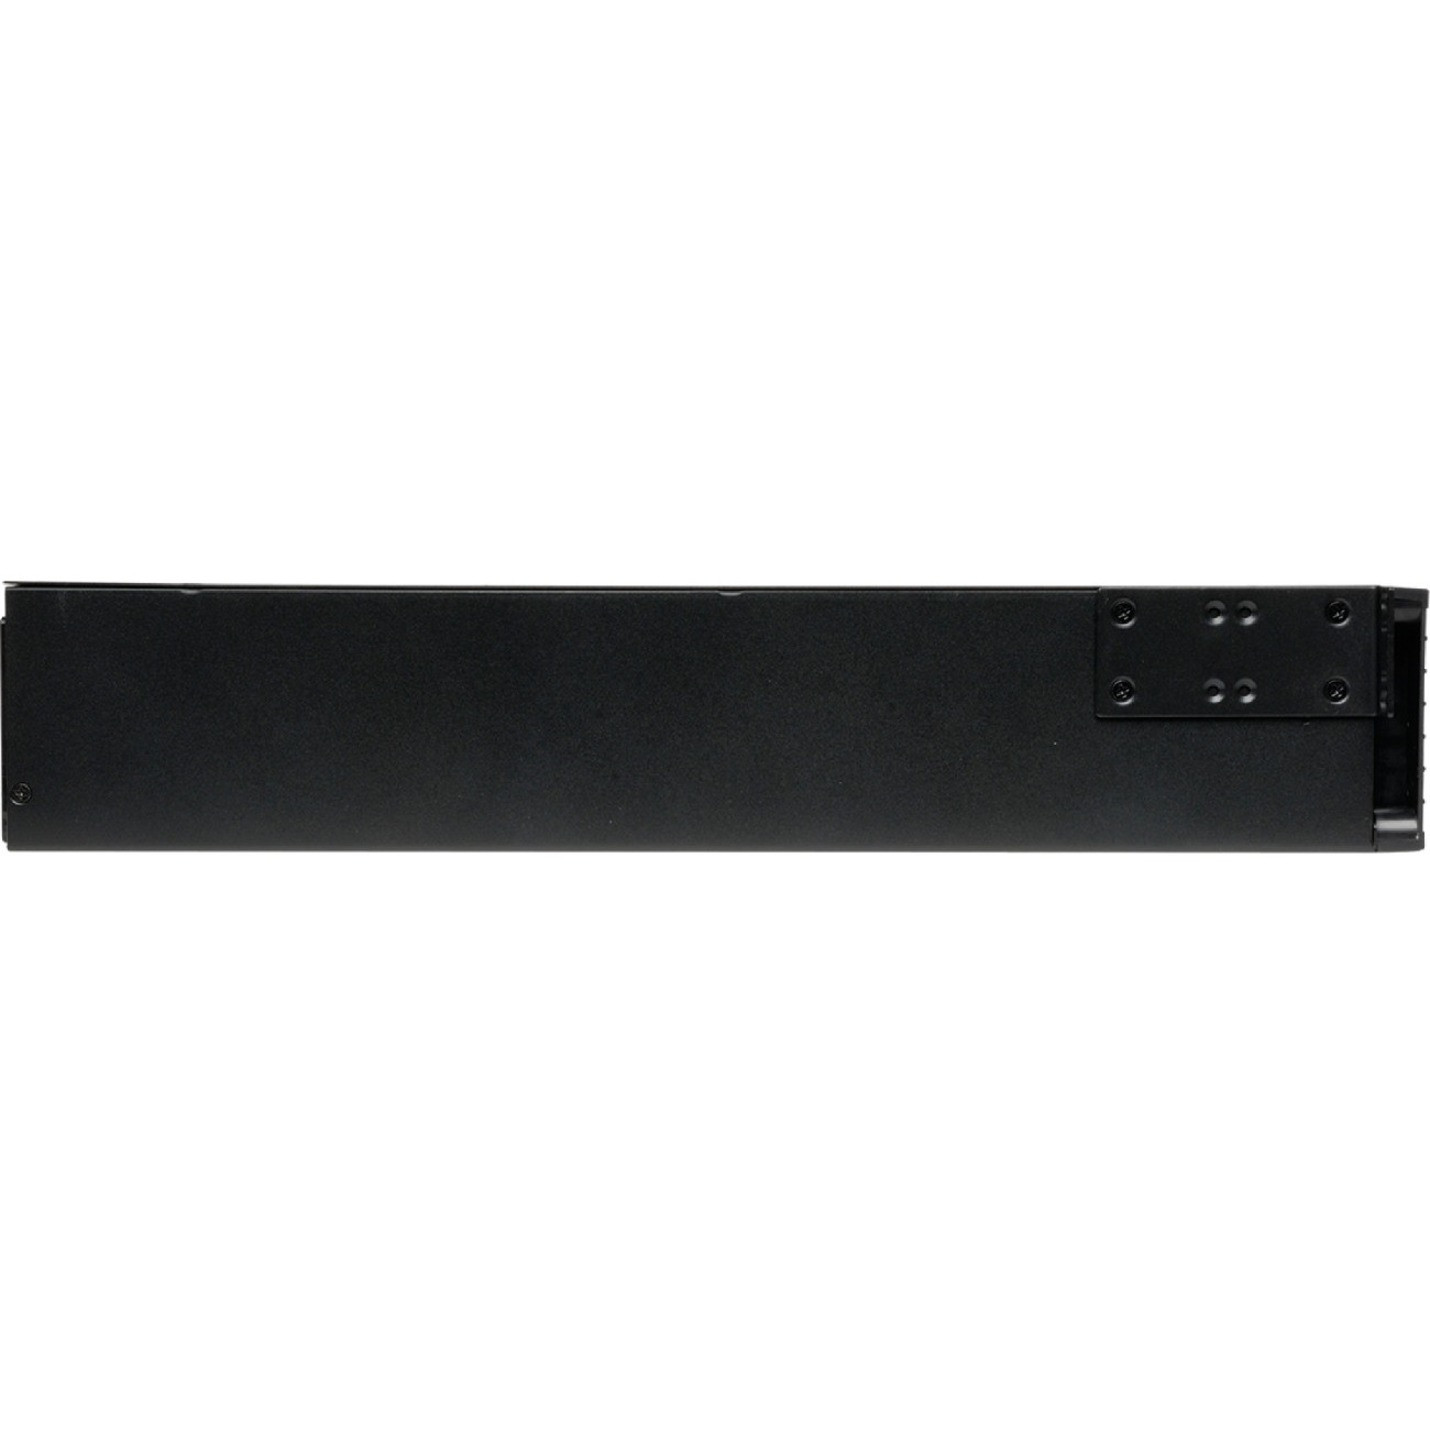 Tripp Lite 1500VA 1350W UPS Smart Online Rackmount LCD 120V USB DB9 2U TAA1500 VA/1350 W100 V AC, 110 V AC, 115 V AC, 120 V AC, 12… SU1500RTXLCDTAA